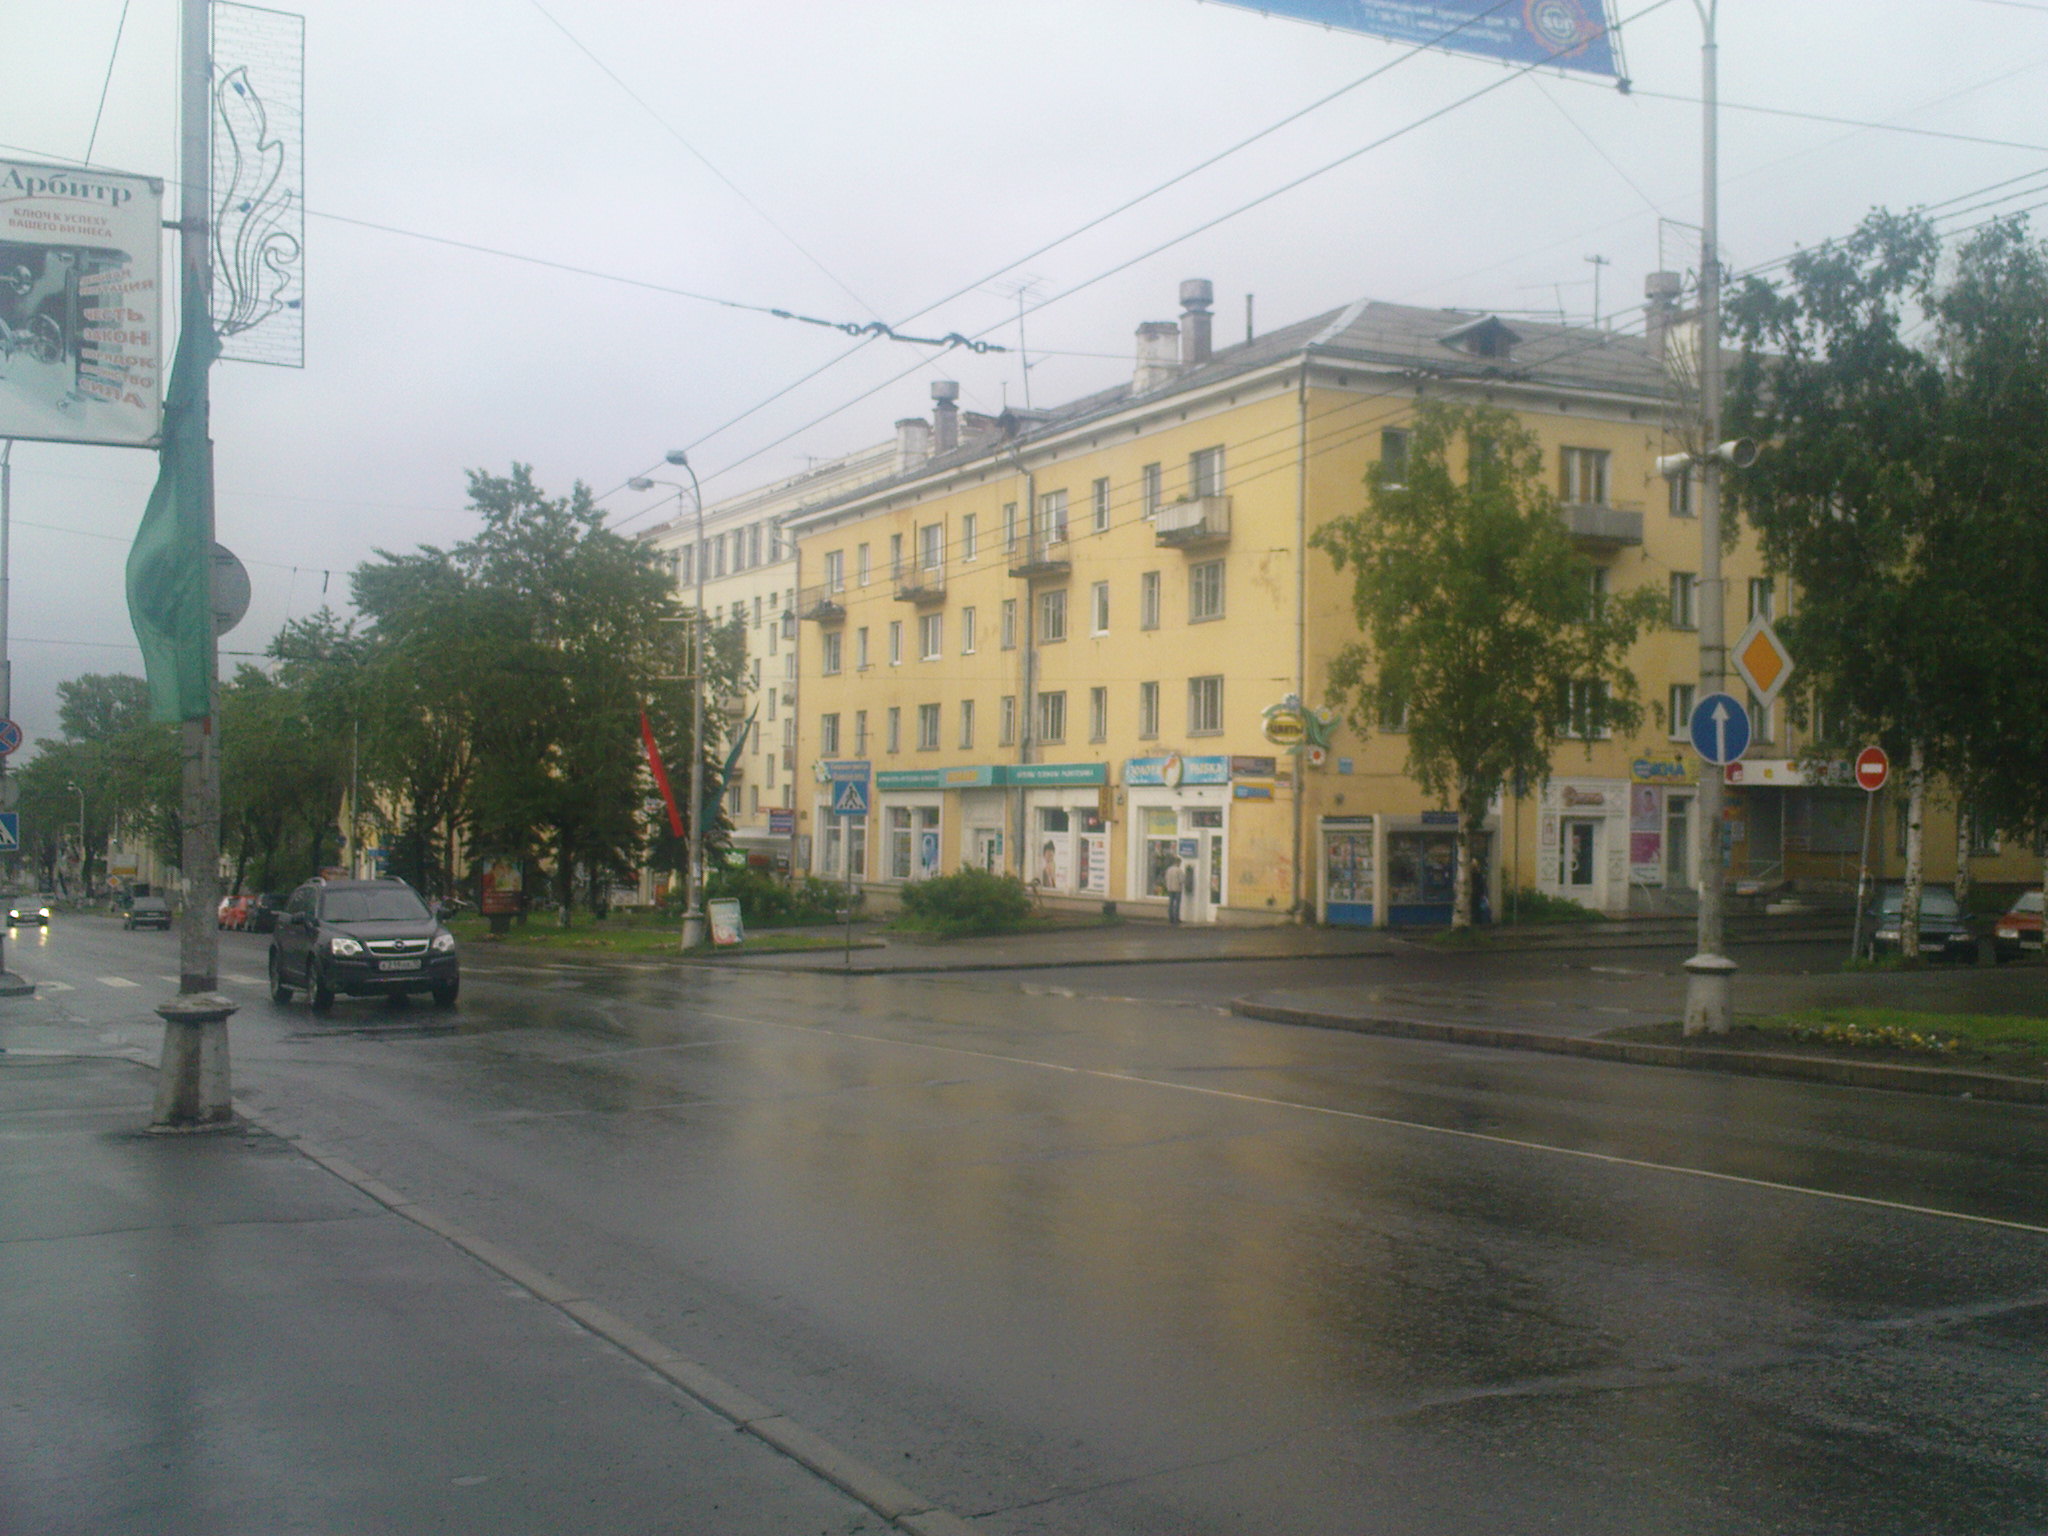 Проспект Ленина. Петрозаводск. Июнь 2010 года. Фото: А.Хохлов